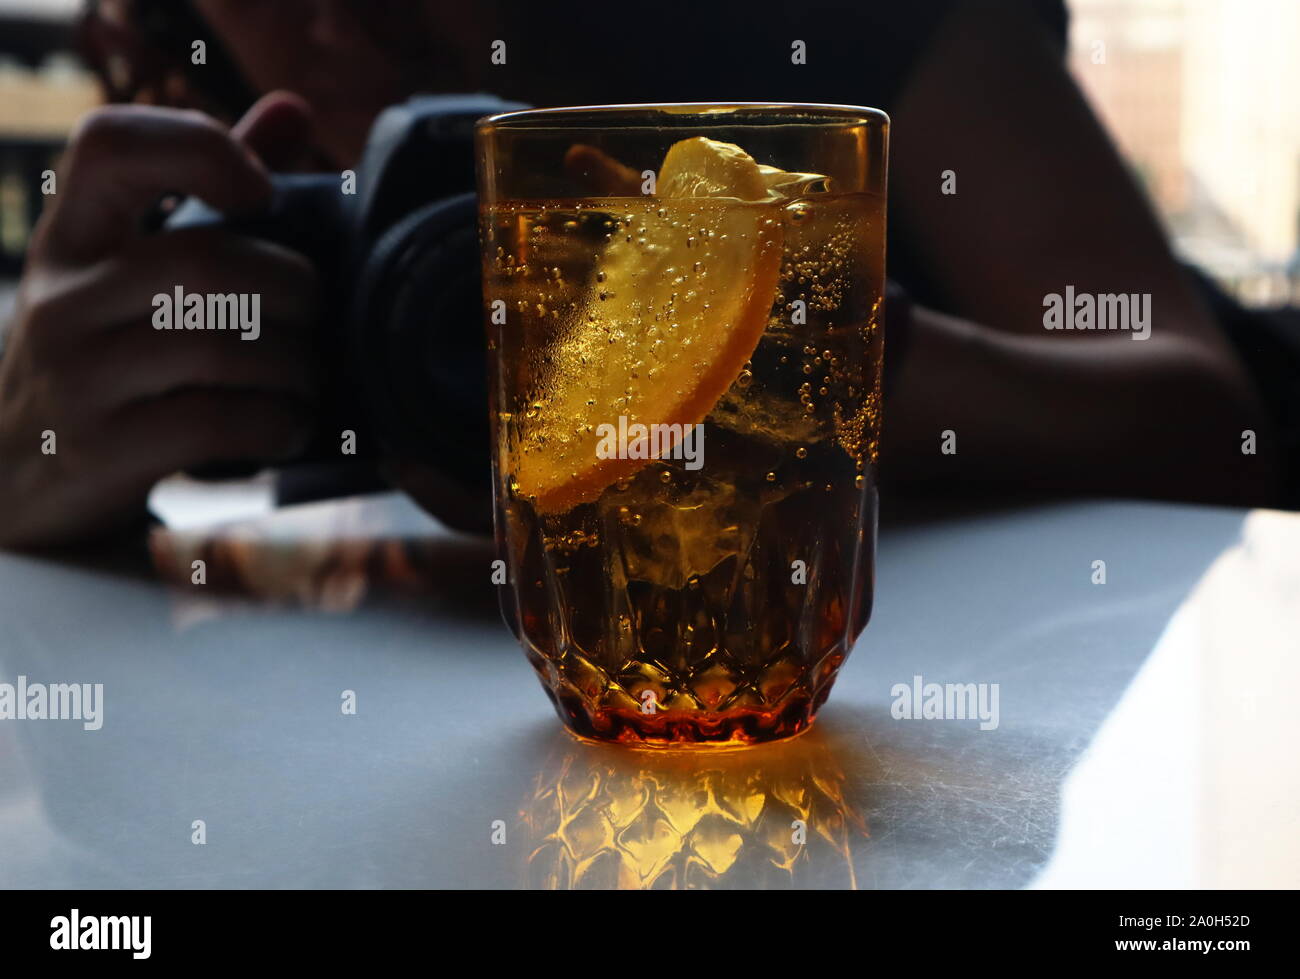 Fotografin mit Canon DSLR-Kamera fotografieren golden Glas Wasser mit Kohlensäure mit zitronenscheibe Stockfoto